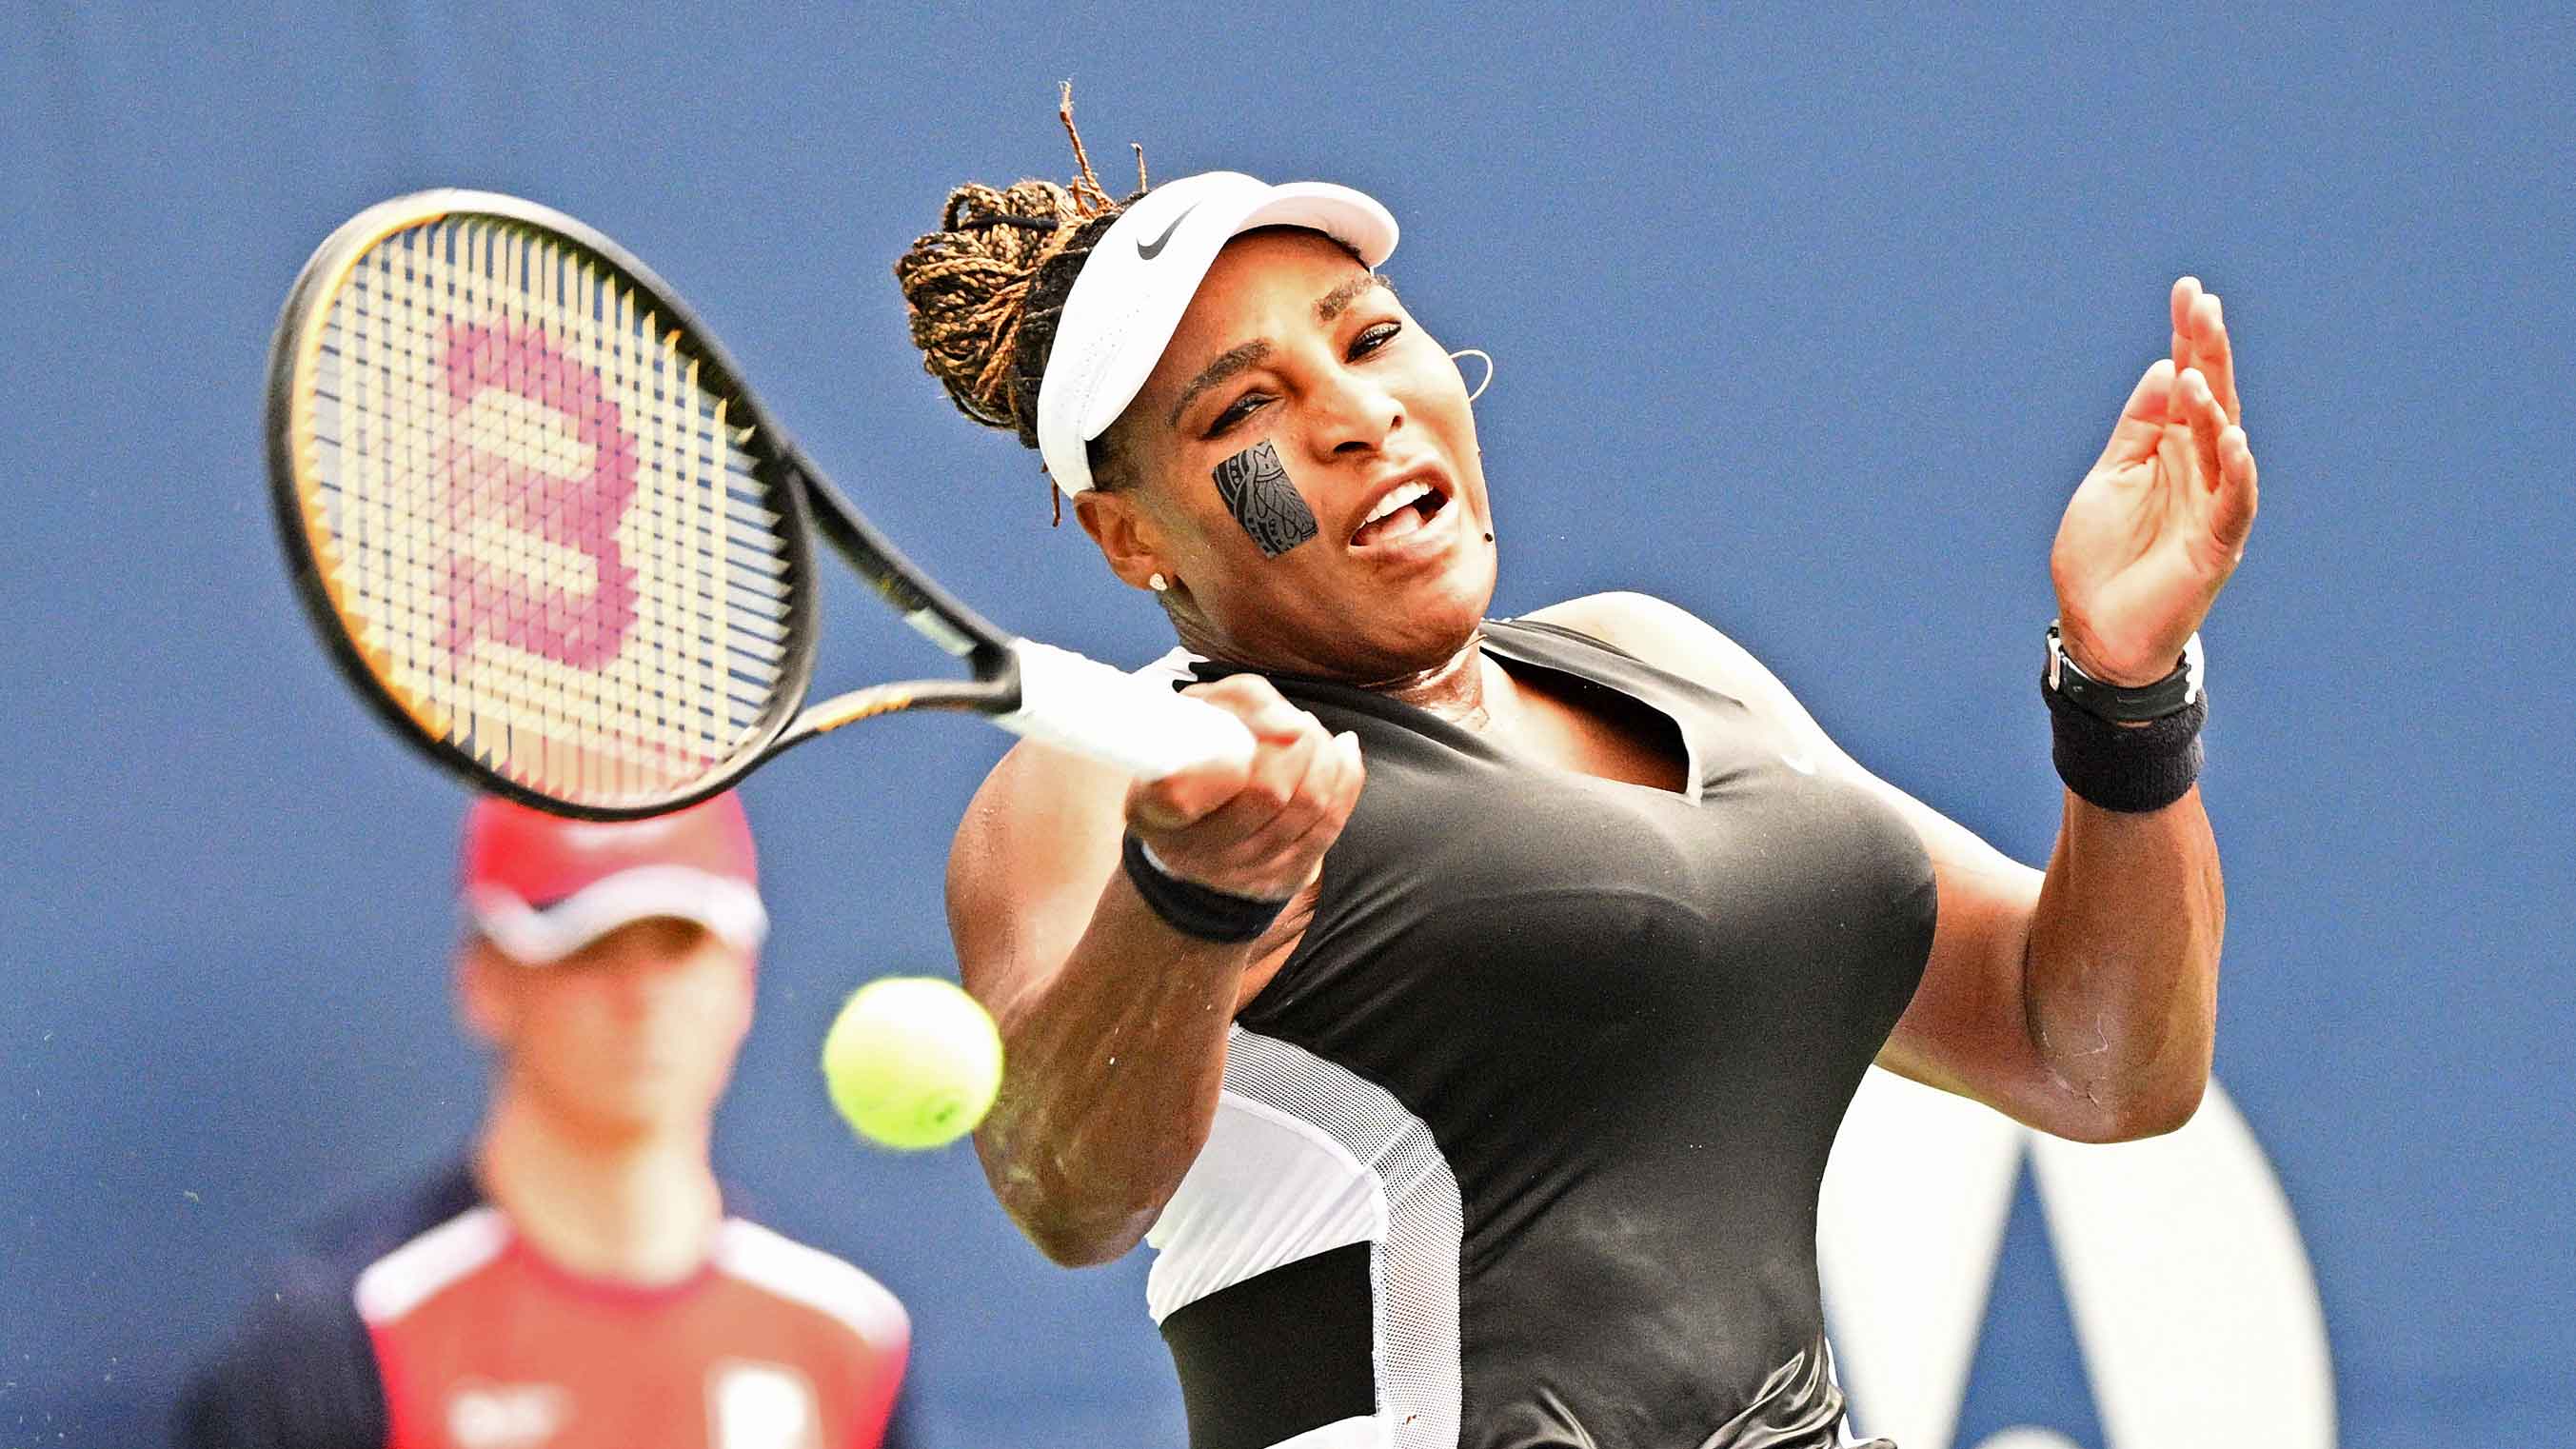 Serena Williams (Trajetória de Sucesso) 